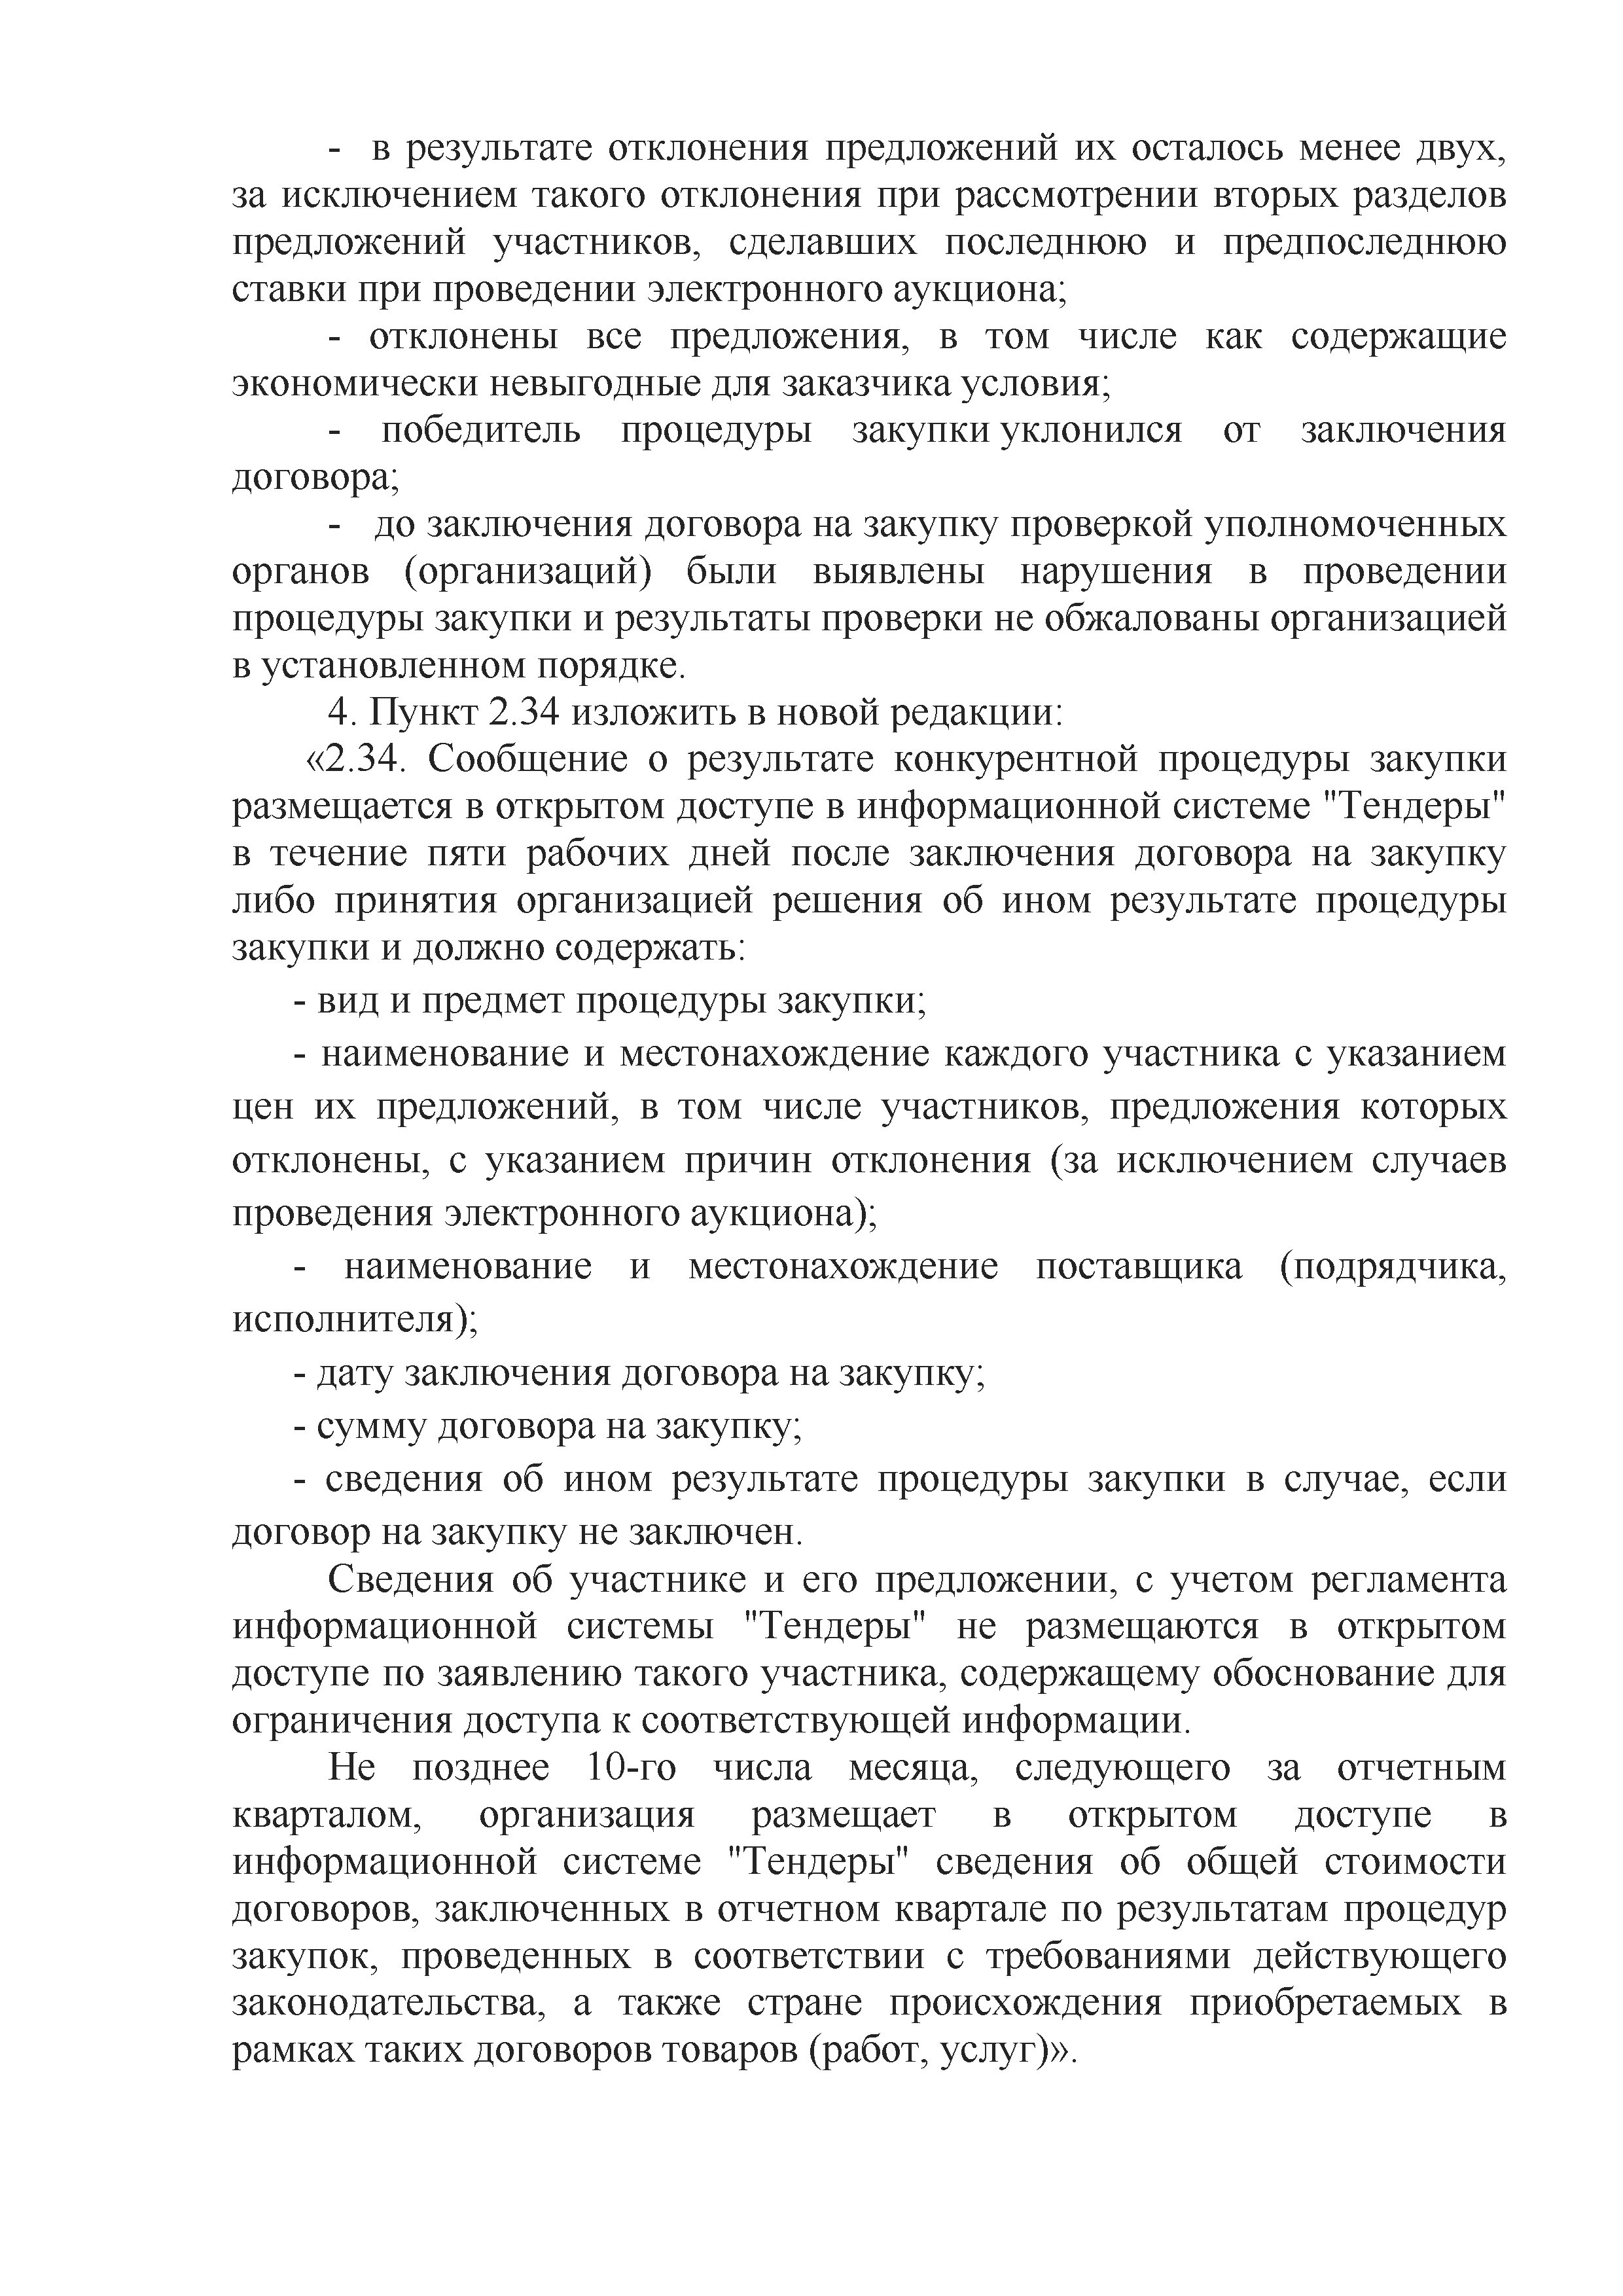 ОАО Торговый дом Сож - Изменения и дополнения 04.10.2022